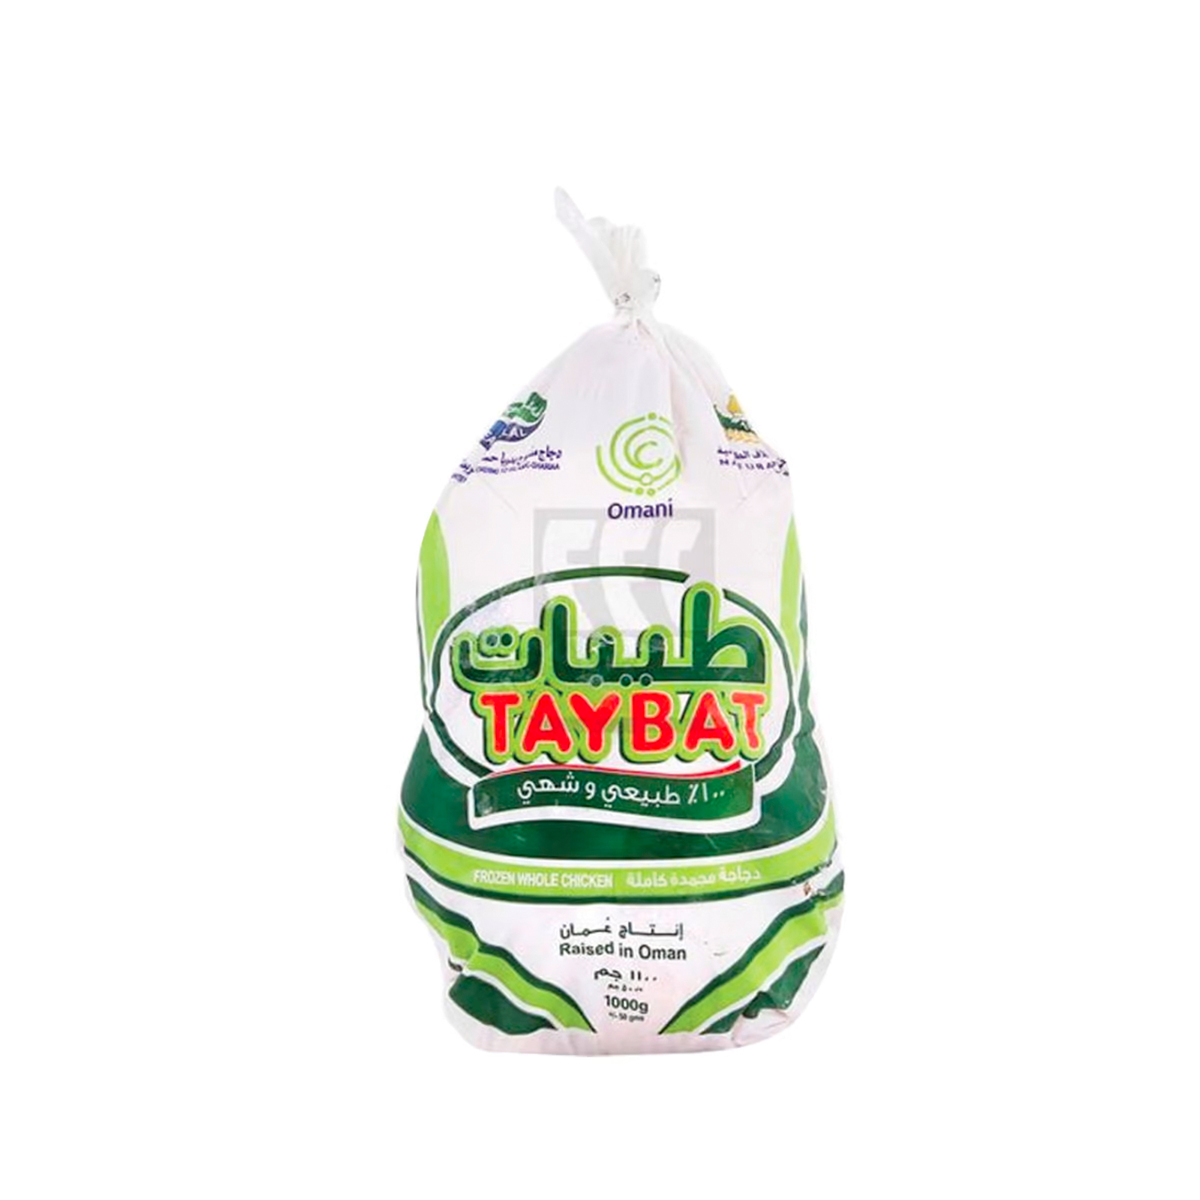 Taybat Whole Chicken 10 x 1kg